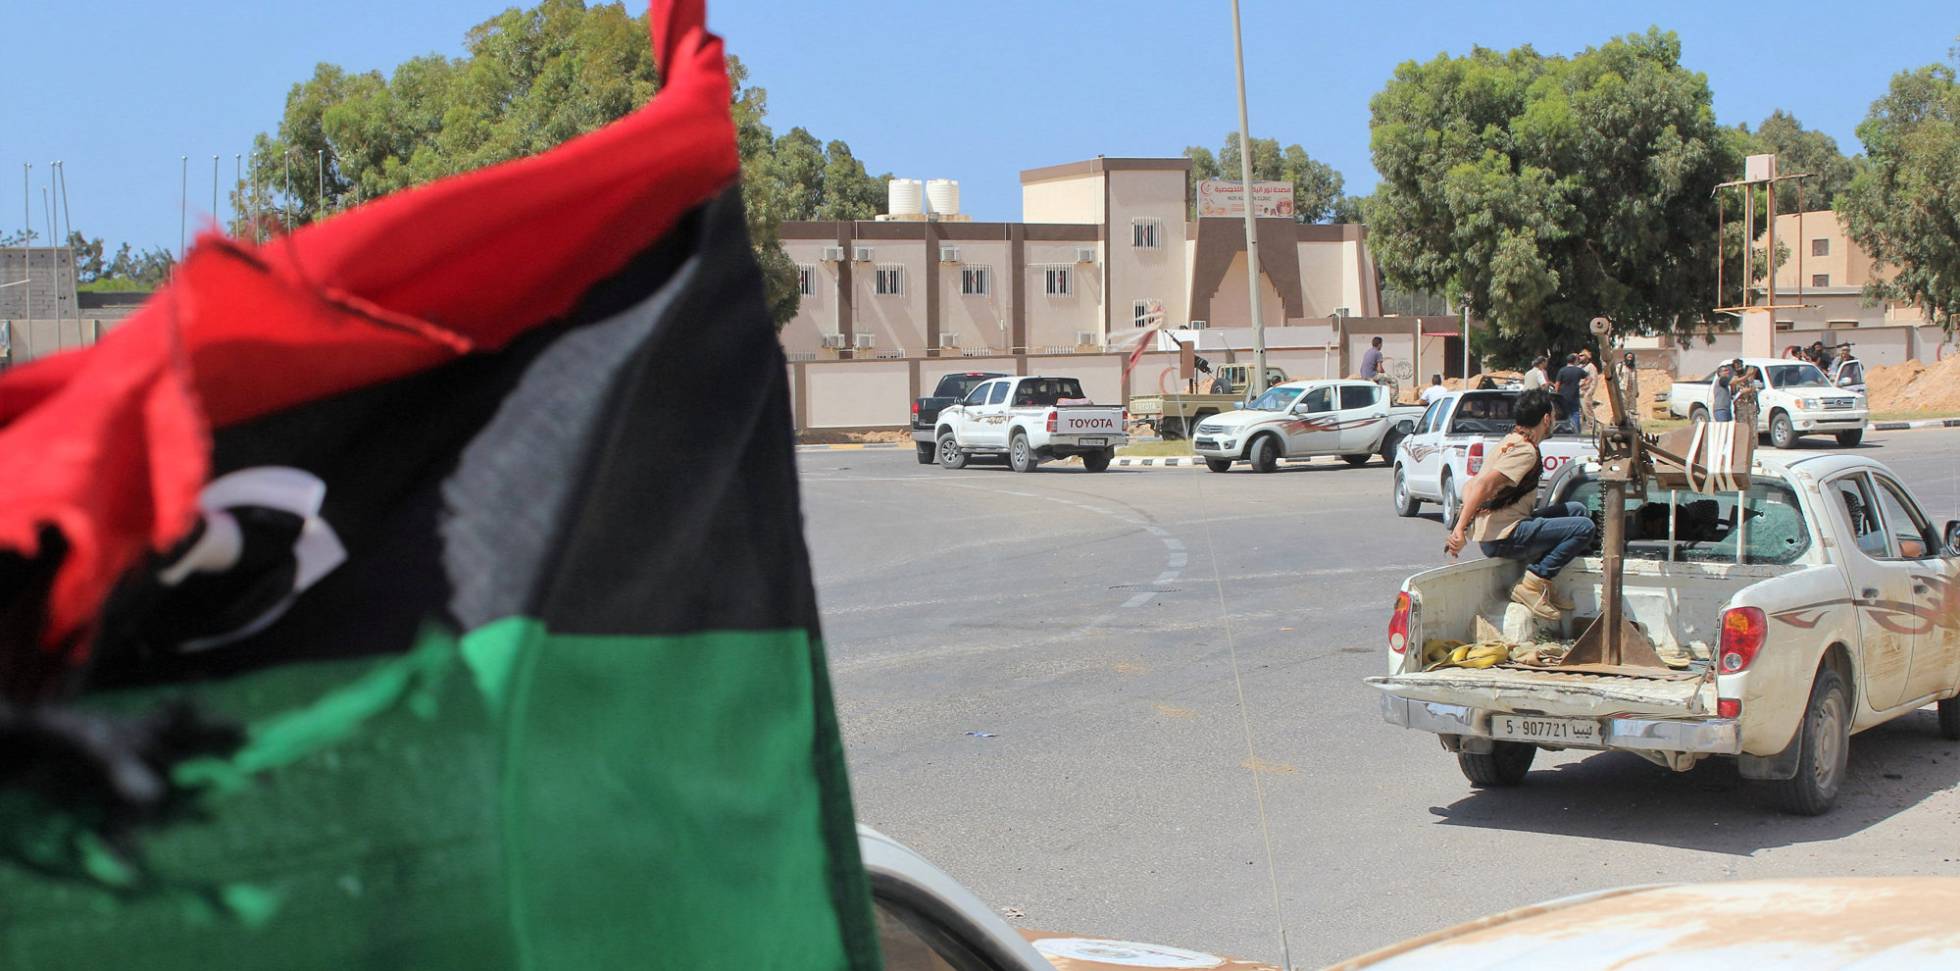 guerra - Libia - Entre la guerra civil y las manos del EI - Página 2 1465636219_310904_1465636448_noticia_normal_recorte1